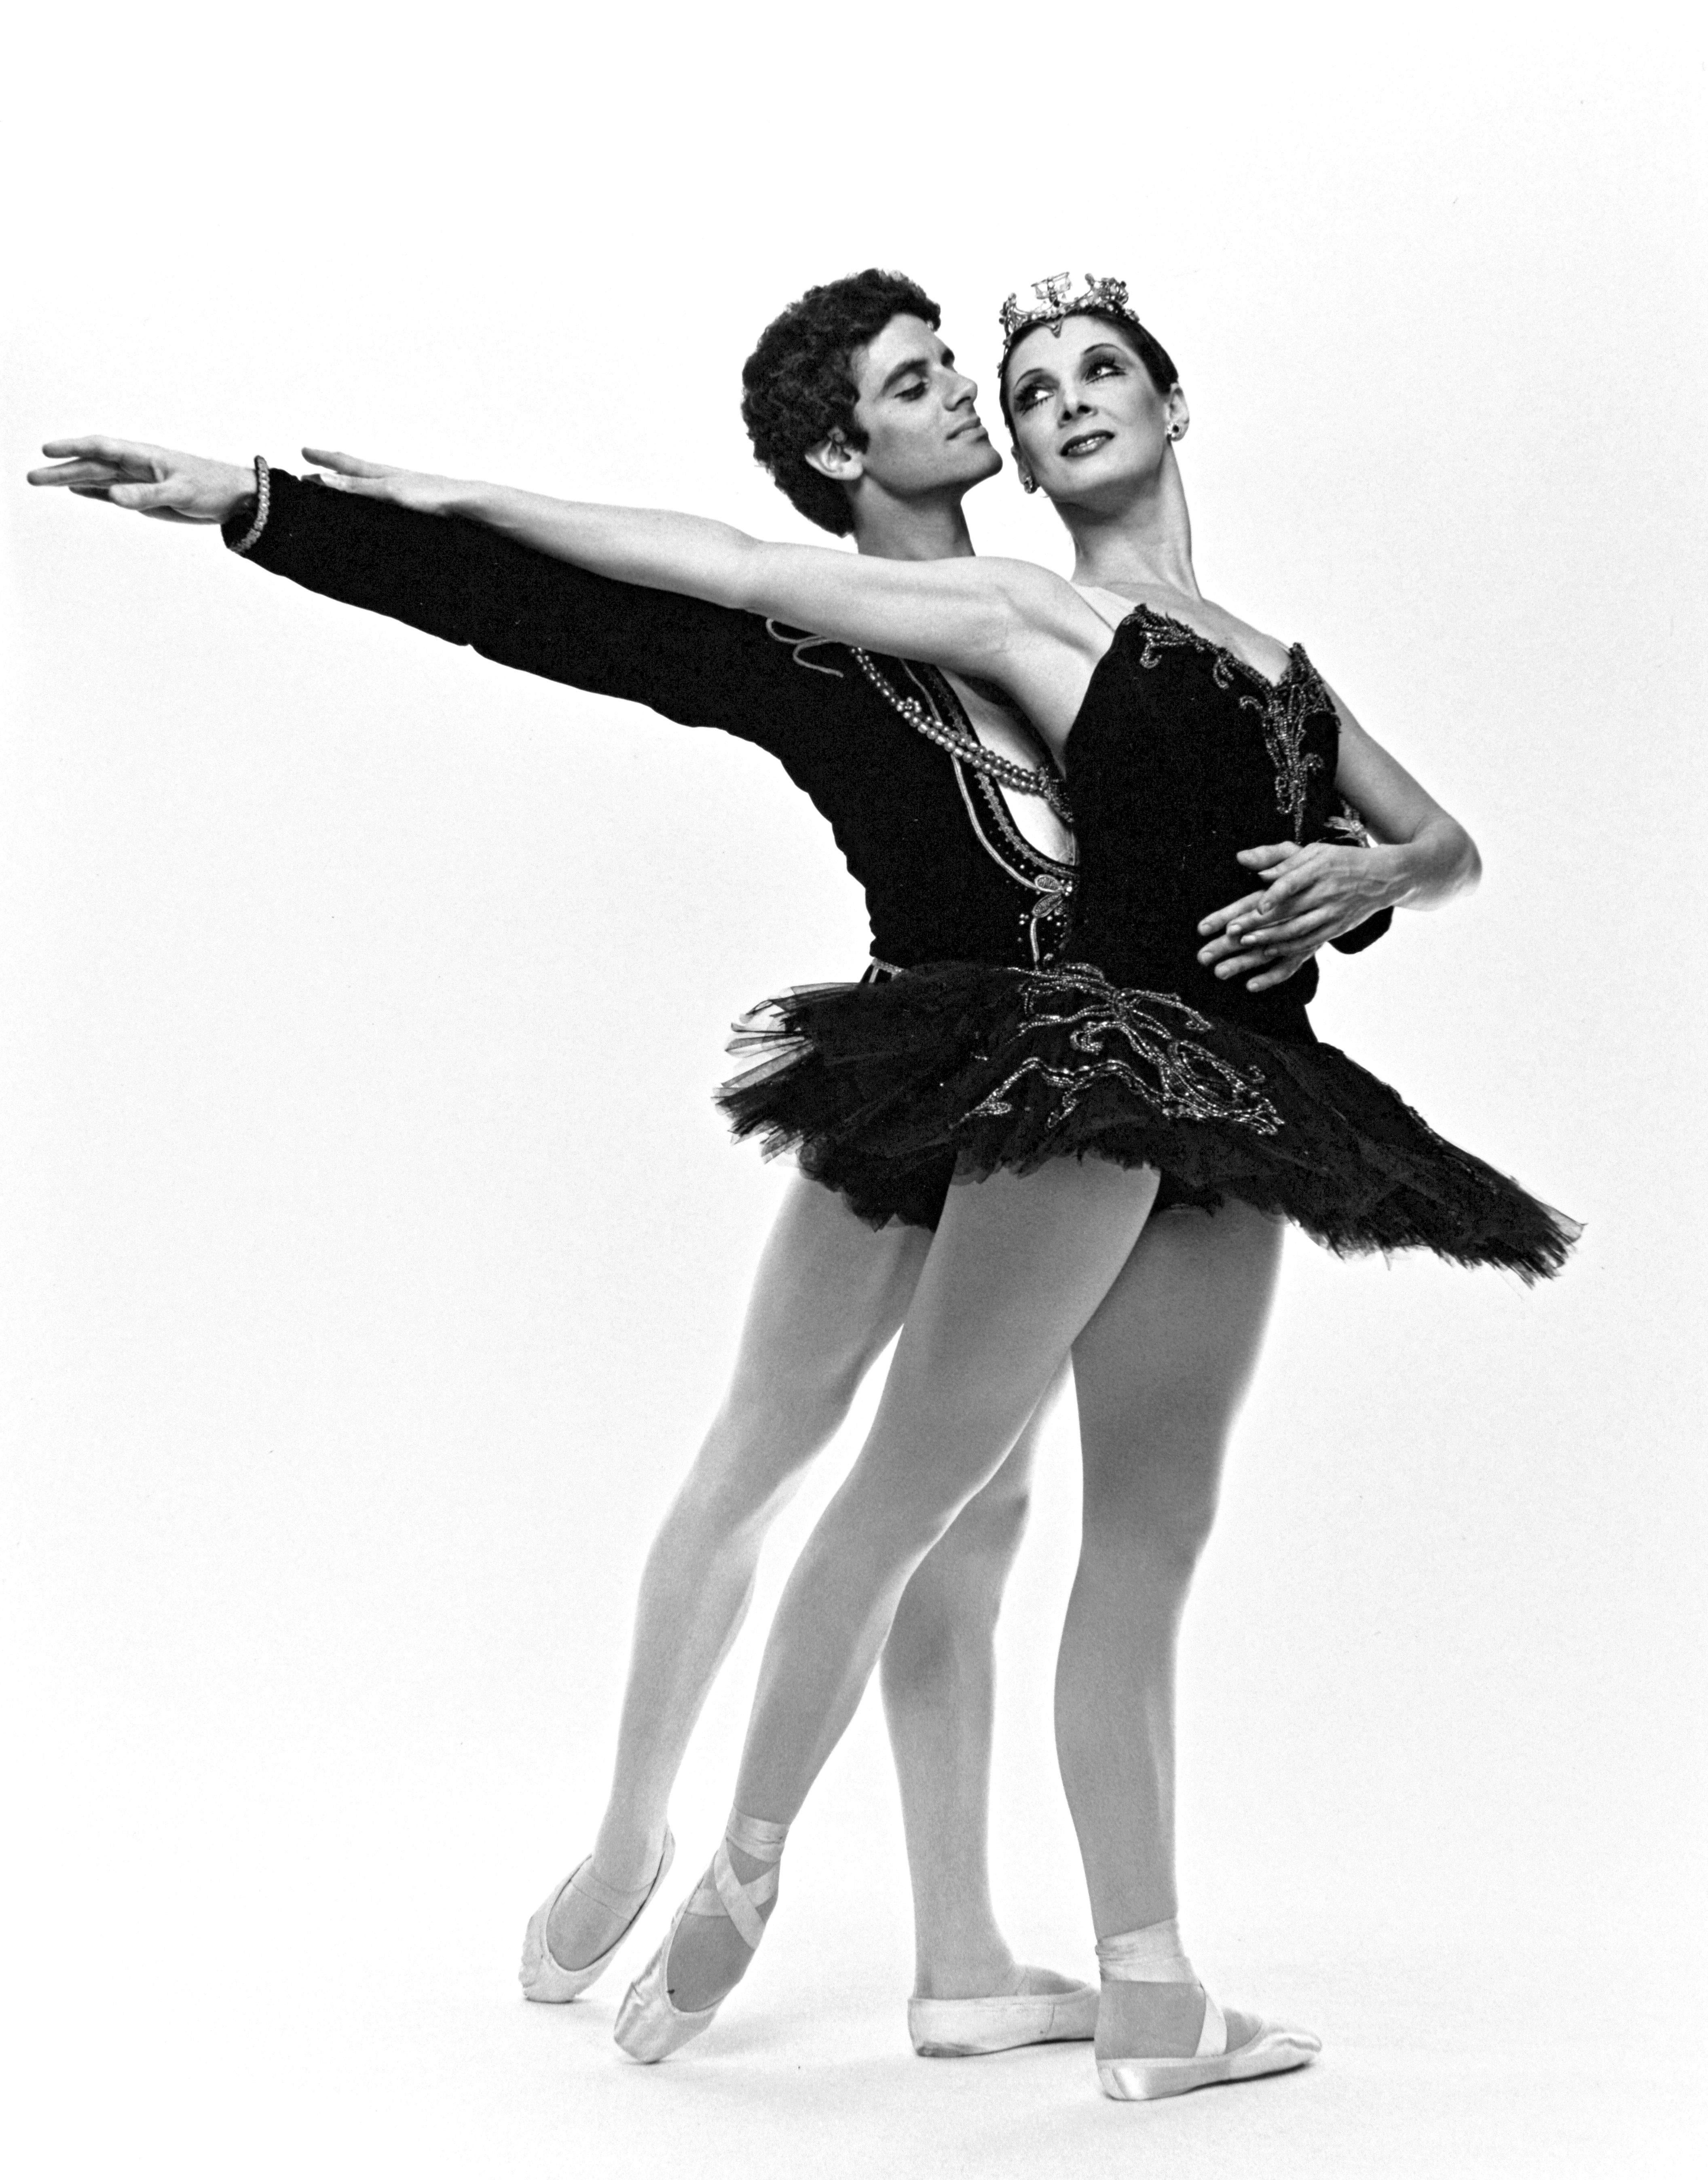 Jack Mitchell Black and White Photograph – Die Haupt Tänzerinnen des BBT, Cynthia Gregory & Fernando Bujones, signiert von Mitchell